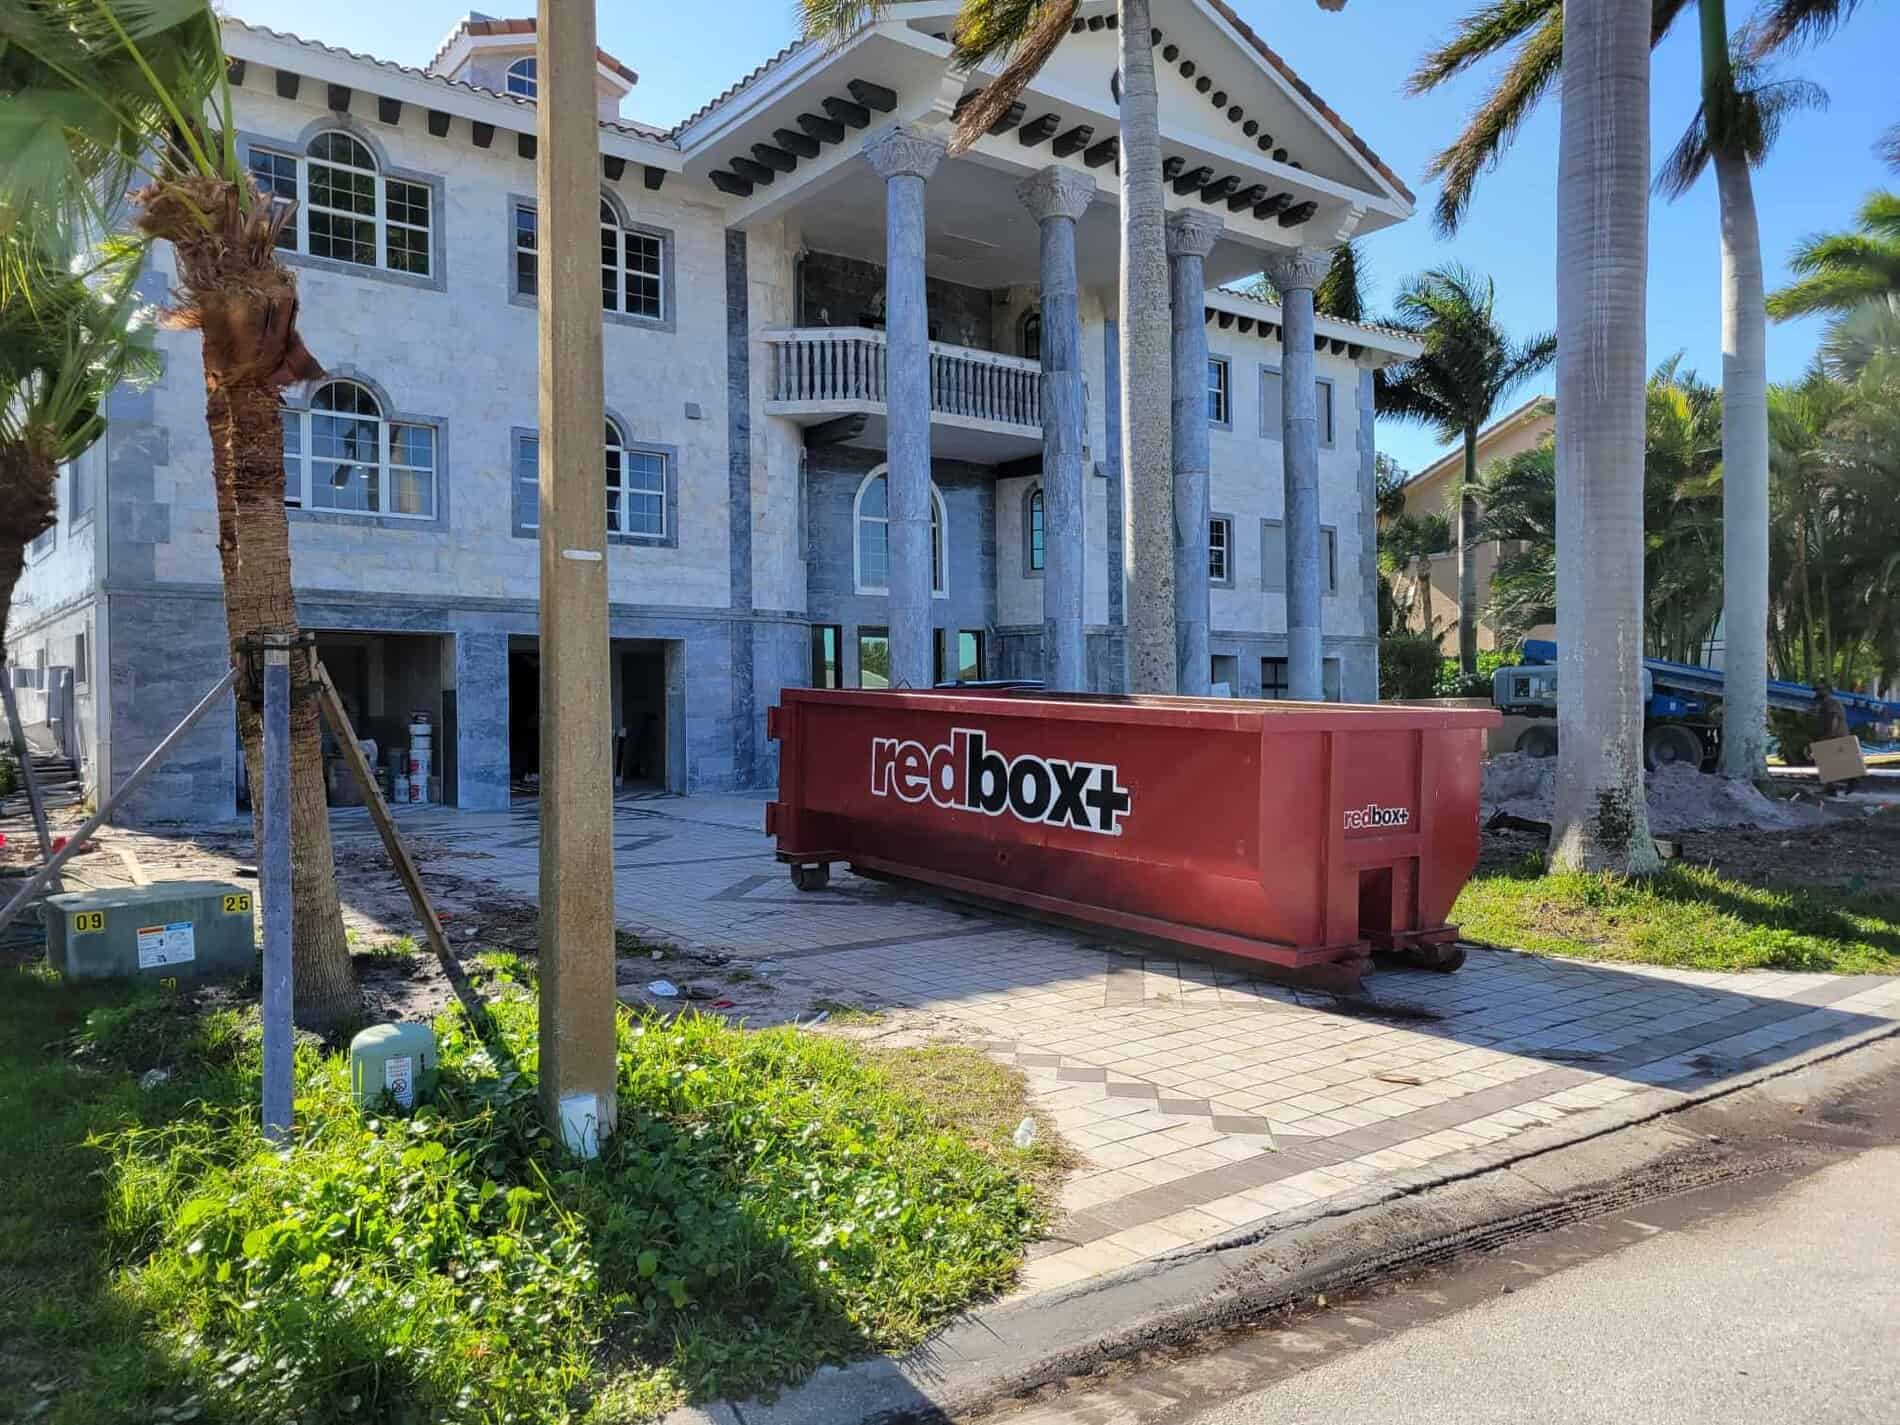 15-Yard Dumpster Rental in St. Petersburg FL